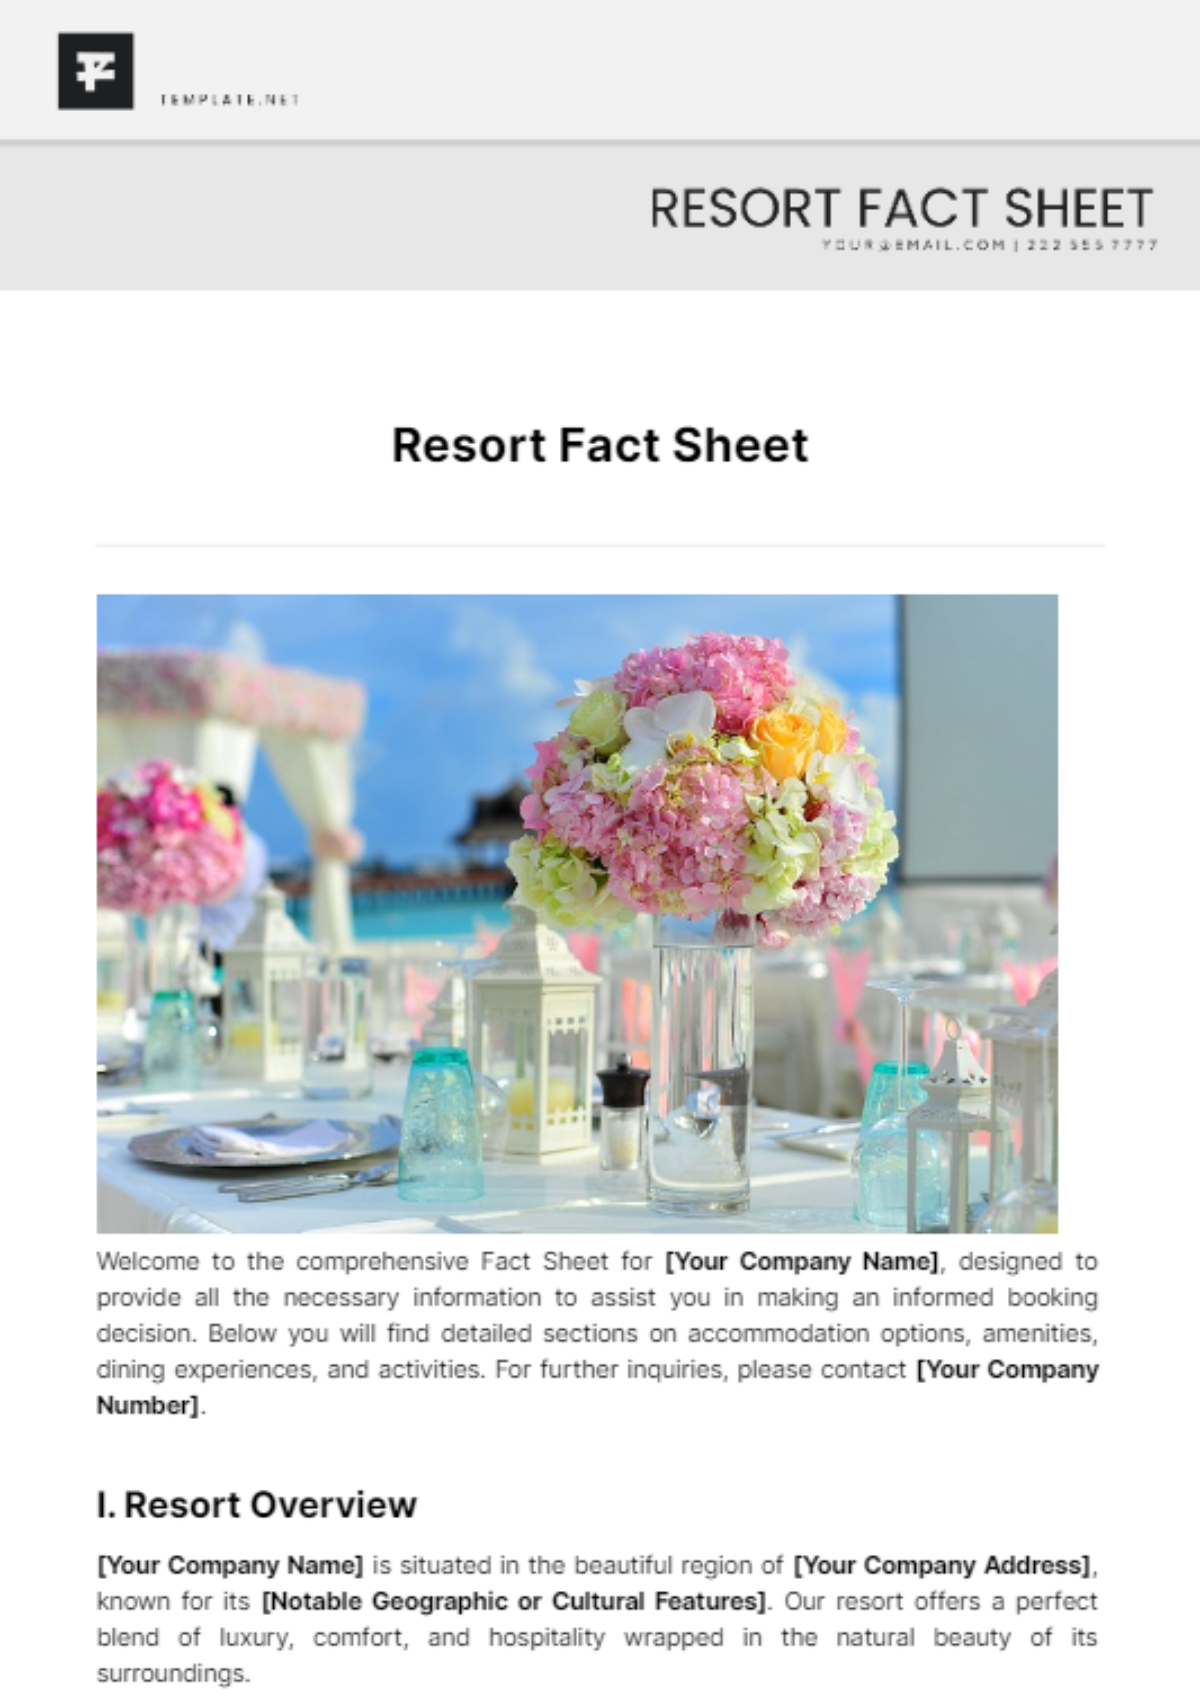 Resort Fact Sheet Template